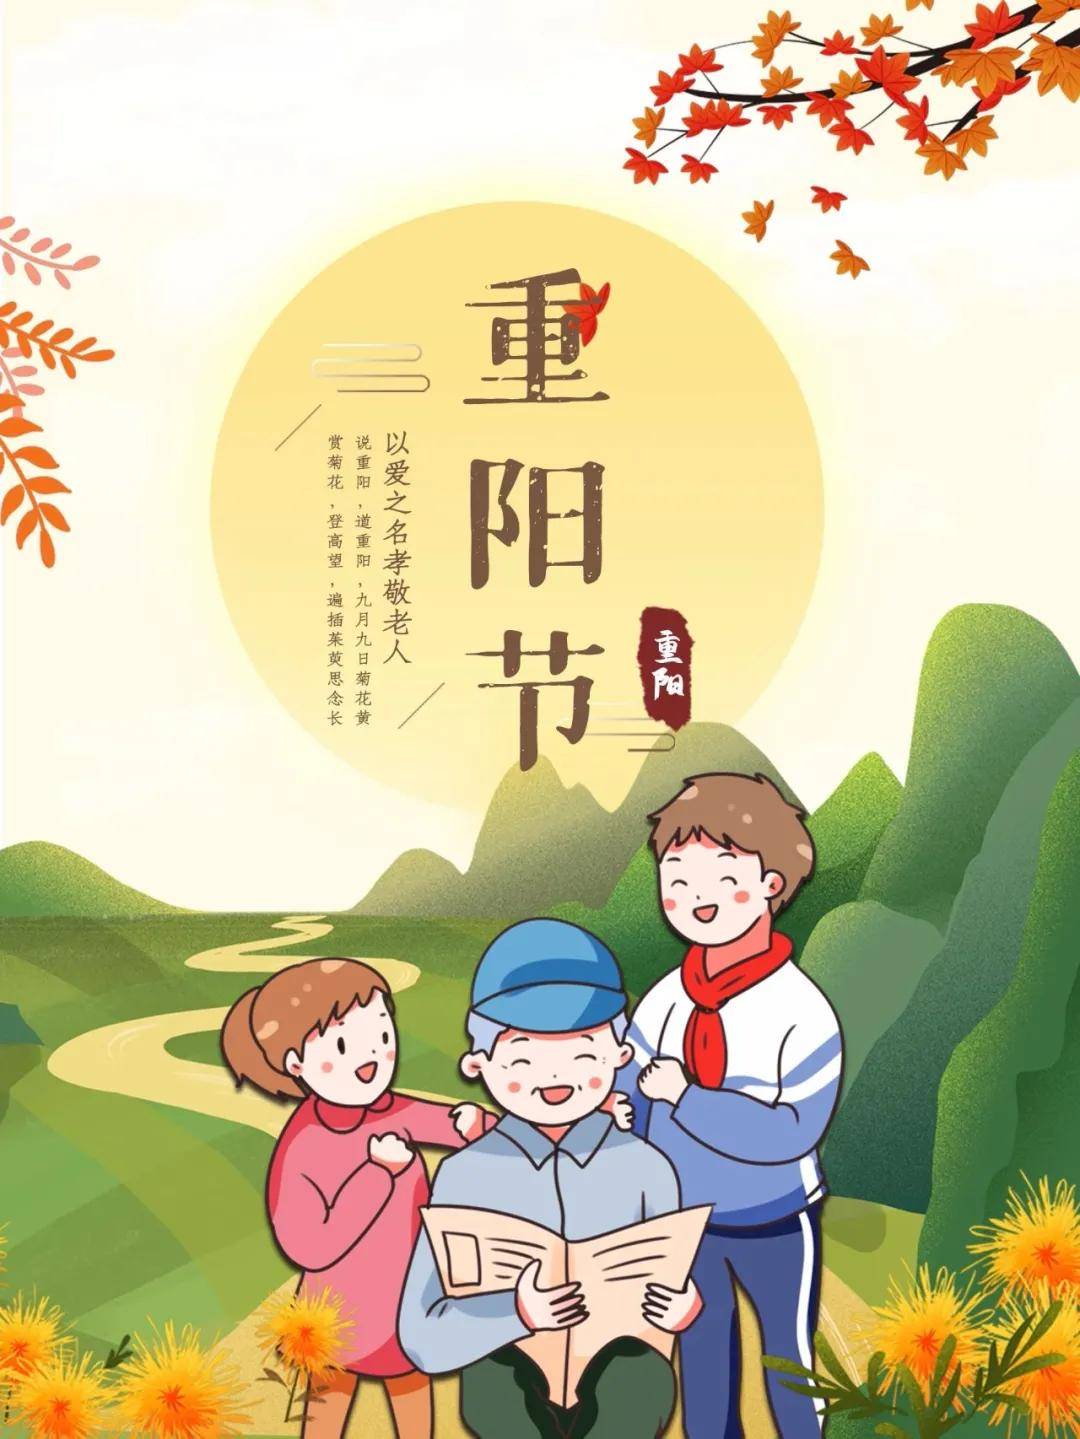 10月14日九九重阳节祝福语简短带图片 重阳佳节送给长辈的祝福语